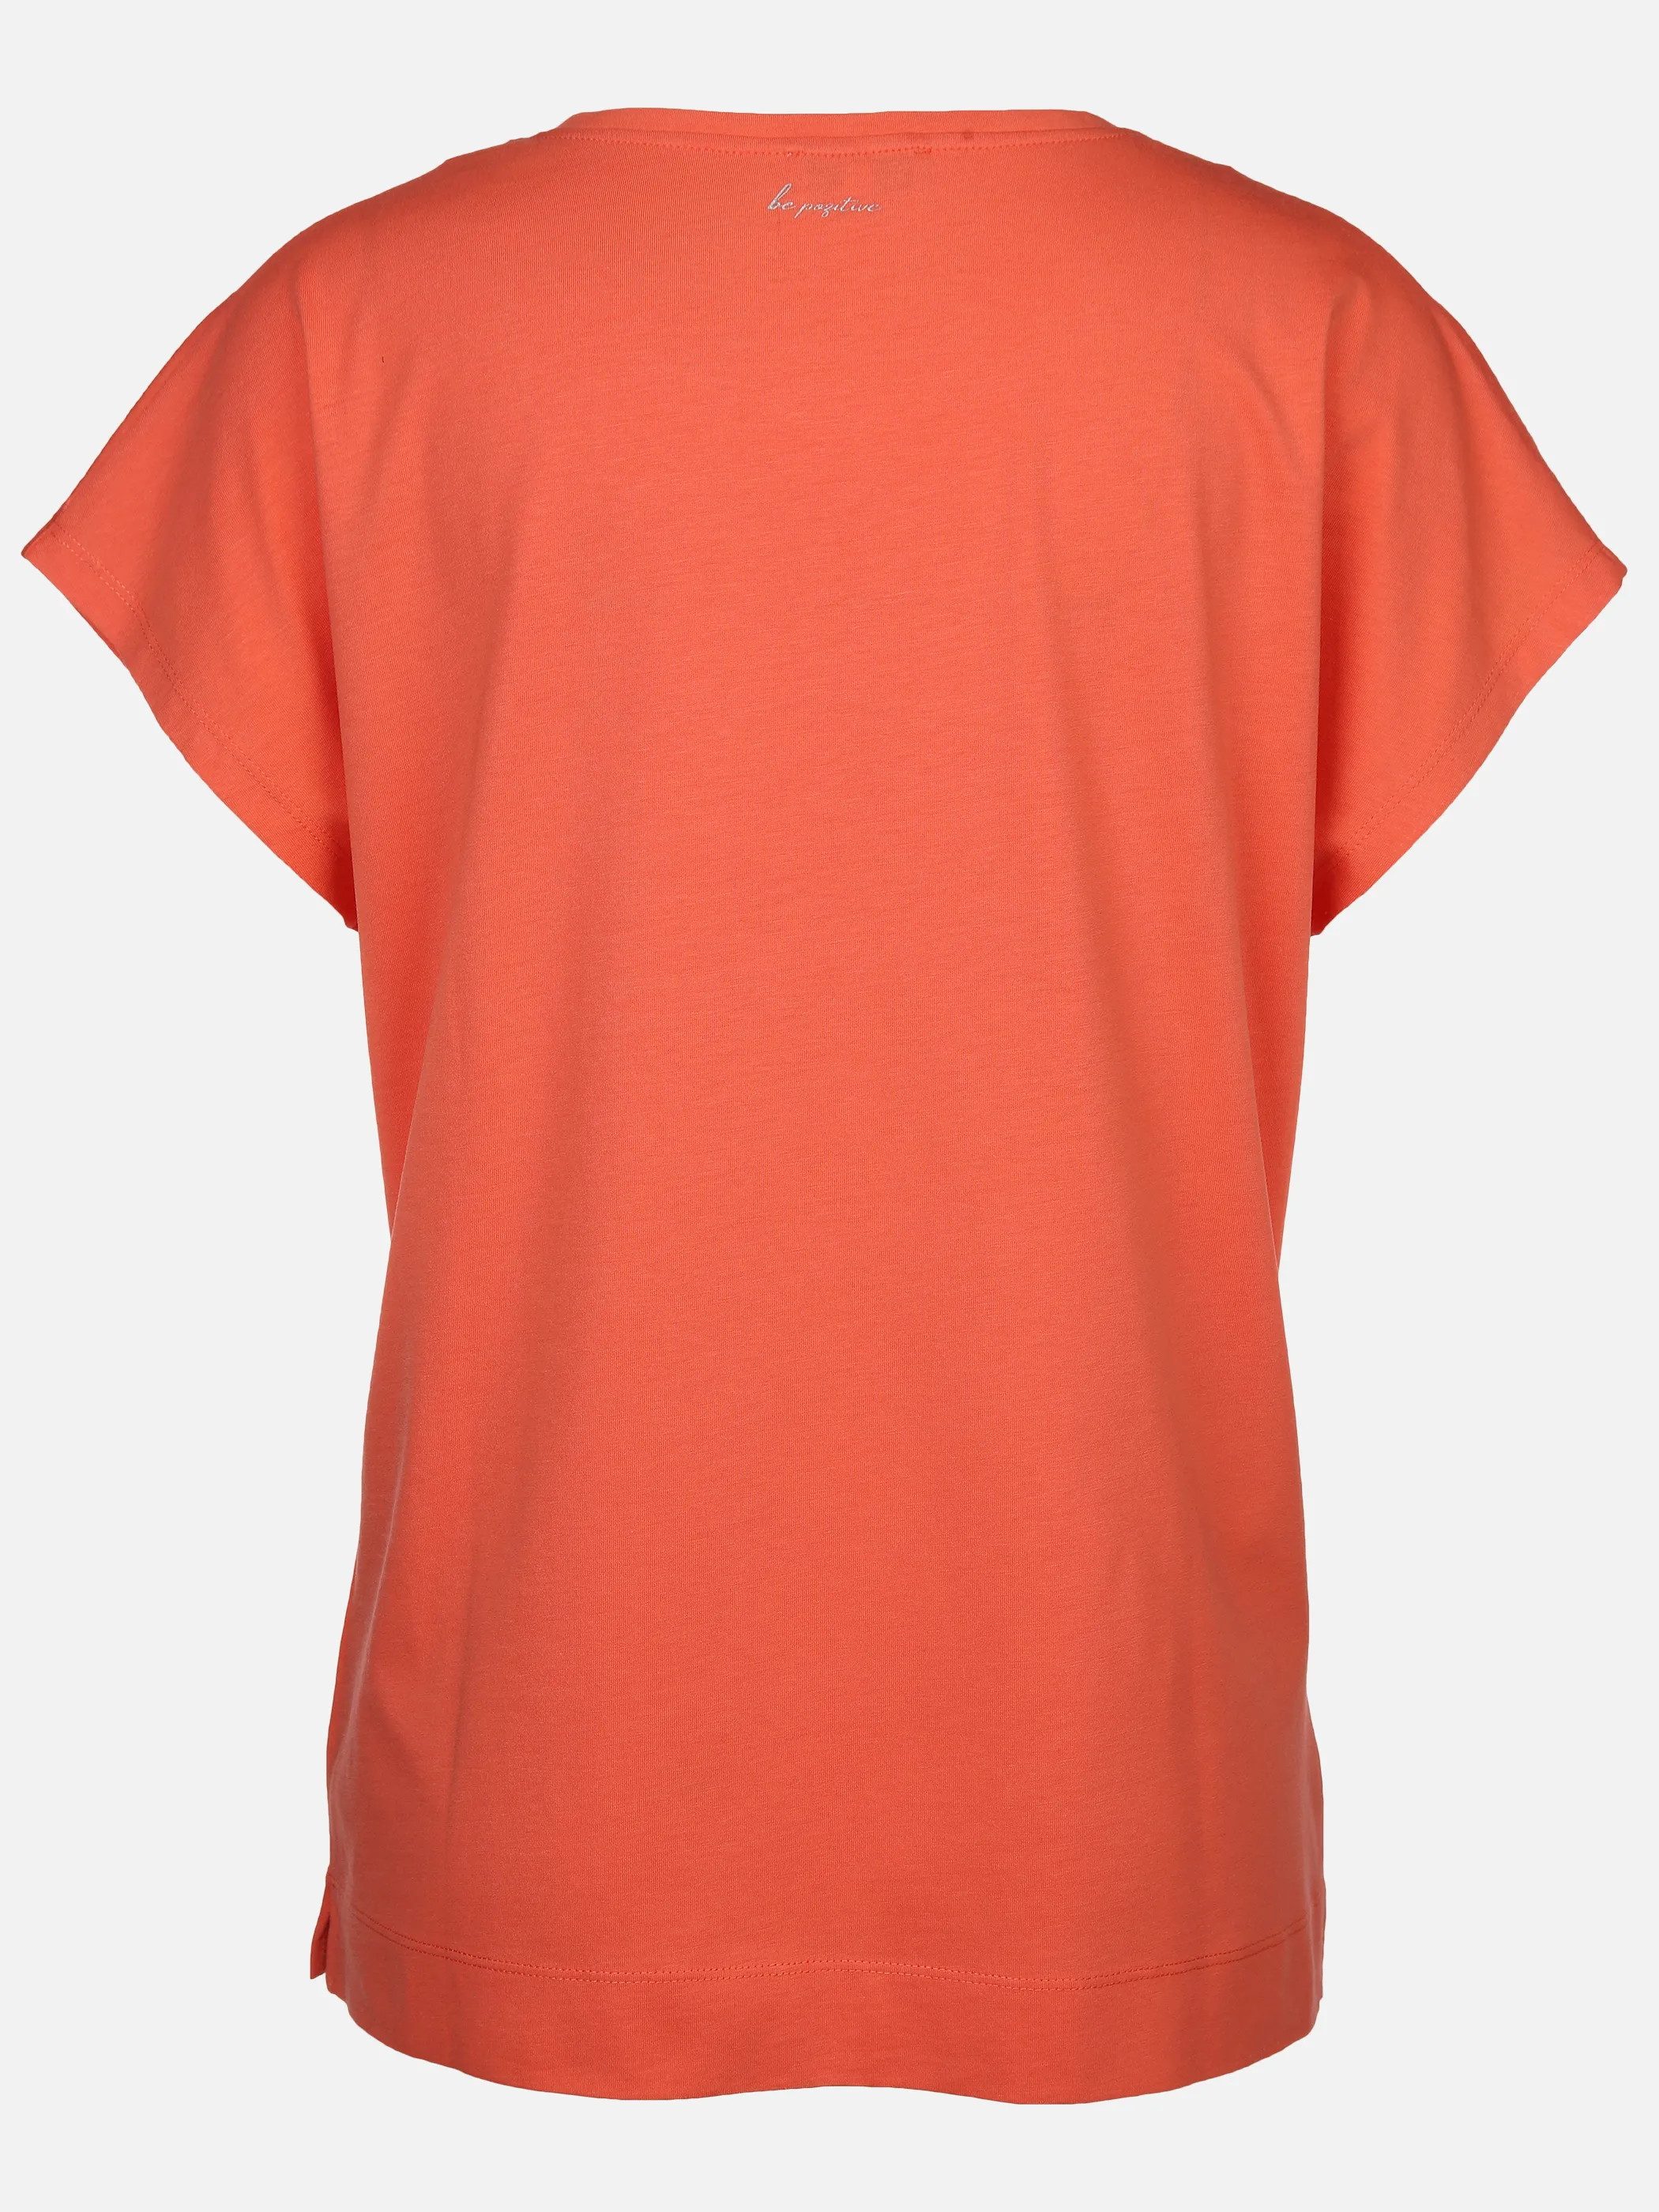 Lisa Tossa Da-T-Shirt m. Straßapplikation Orange 893032 PAPAYA 2